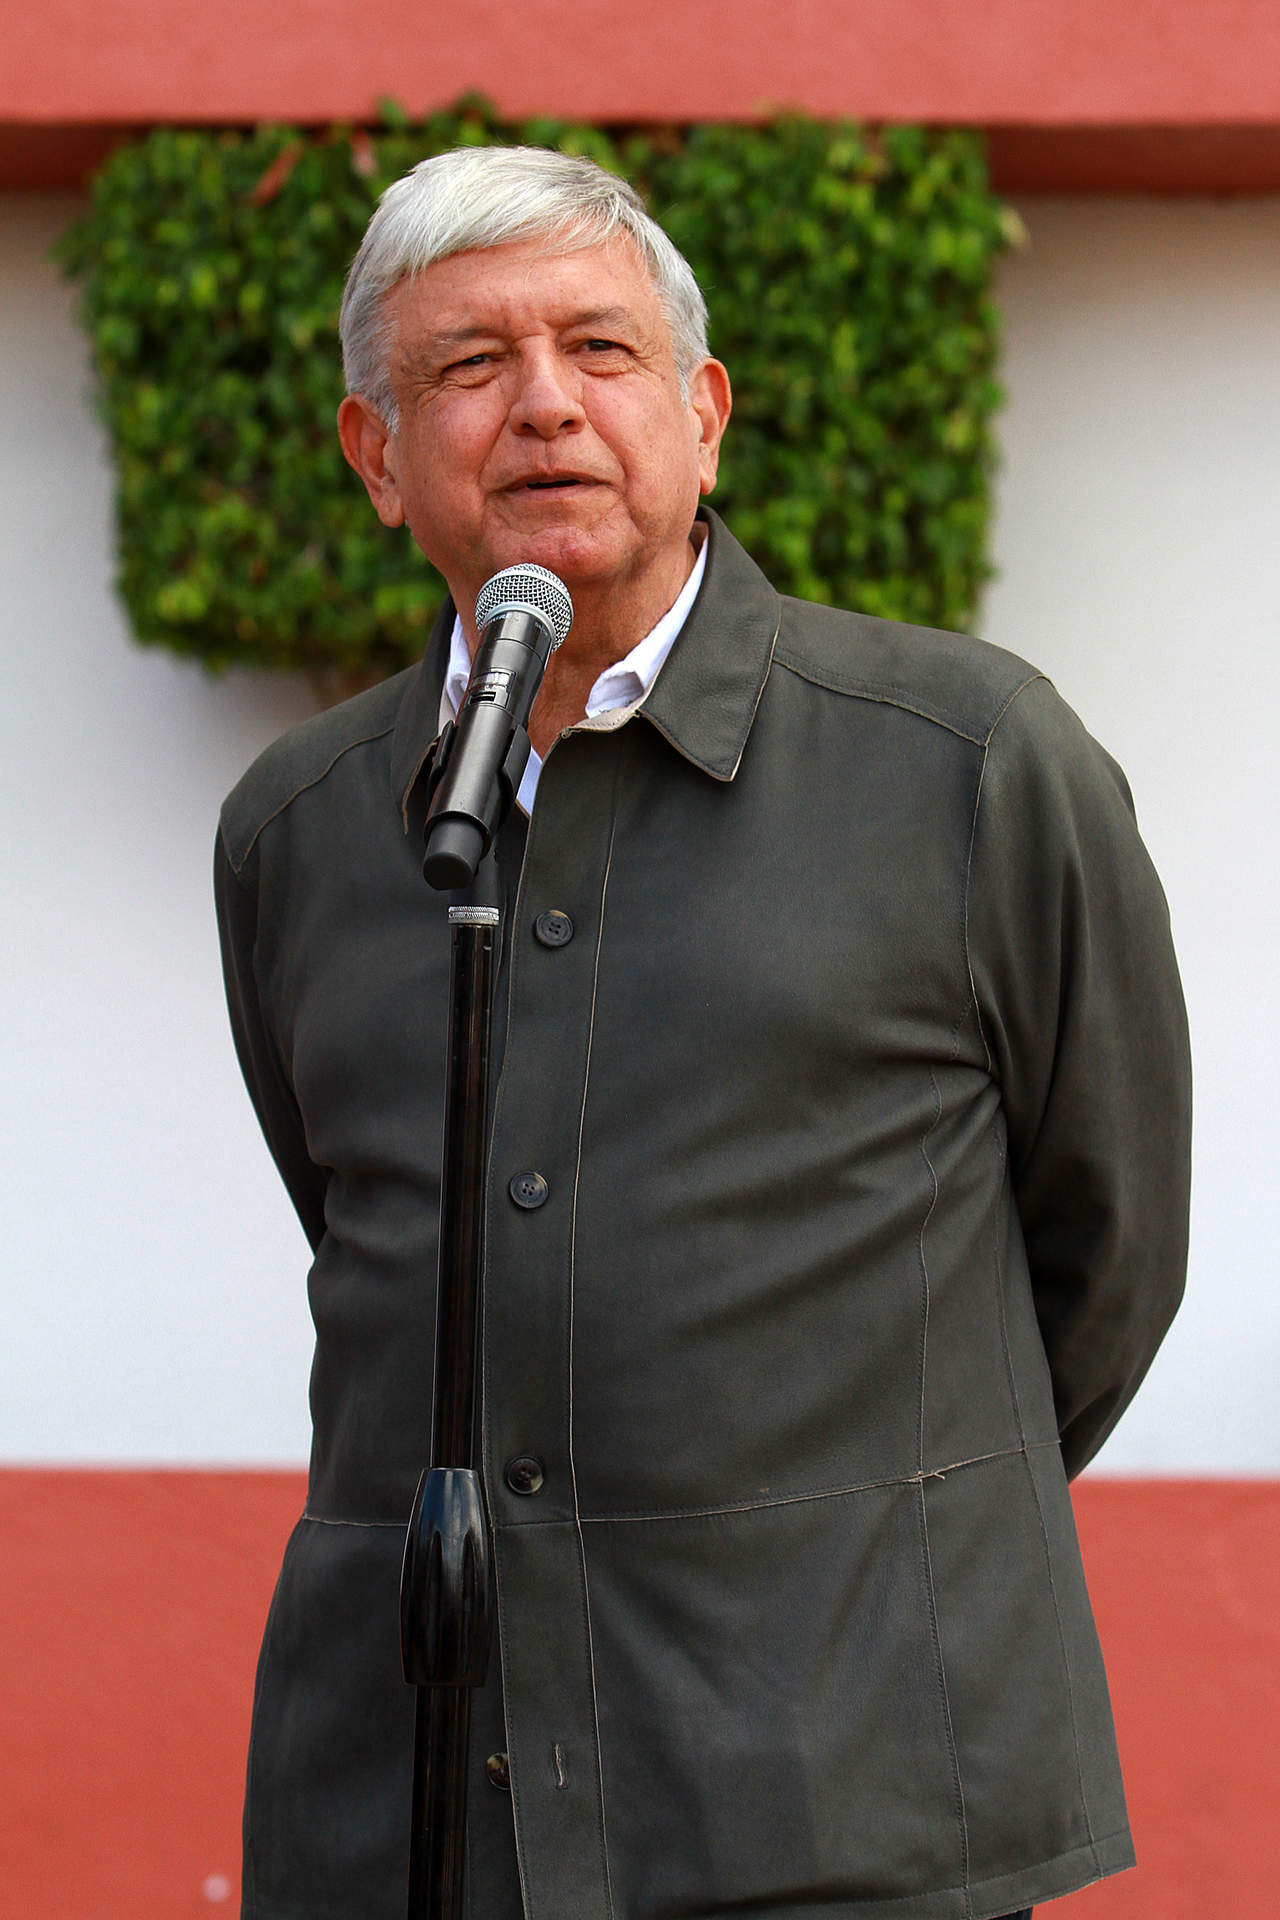 López Obrador prevé inversión de 5 mil mdp para refinería de Tula. Noticias en tiempo real